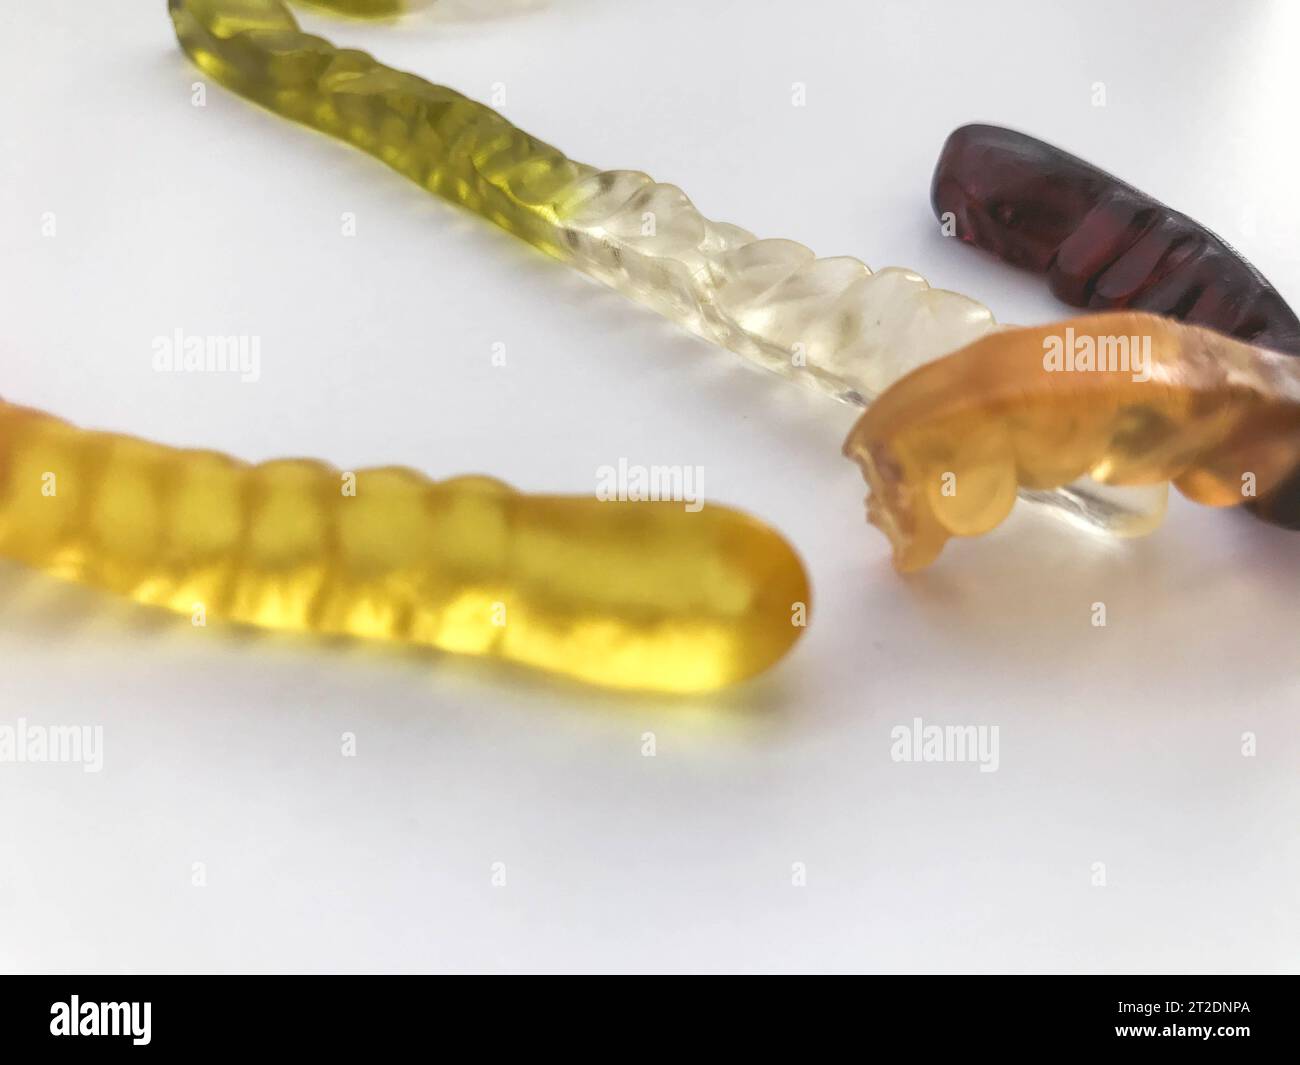 Gummiwürmer. Gelatinewürmer, kalorienreiche und köstliche Desserts. Köstliche Süßigkeiten auf weißem mattem Hintergrund. Helle Würmer. Gammi. Leckere Gummigummis Stockfoto